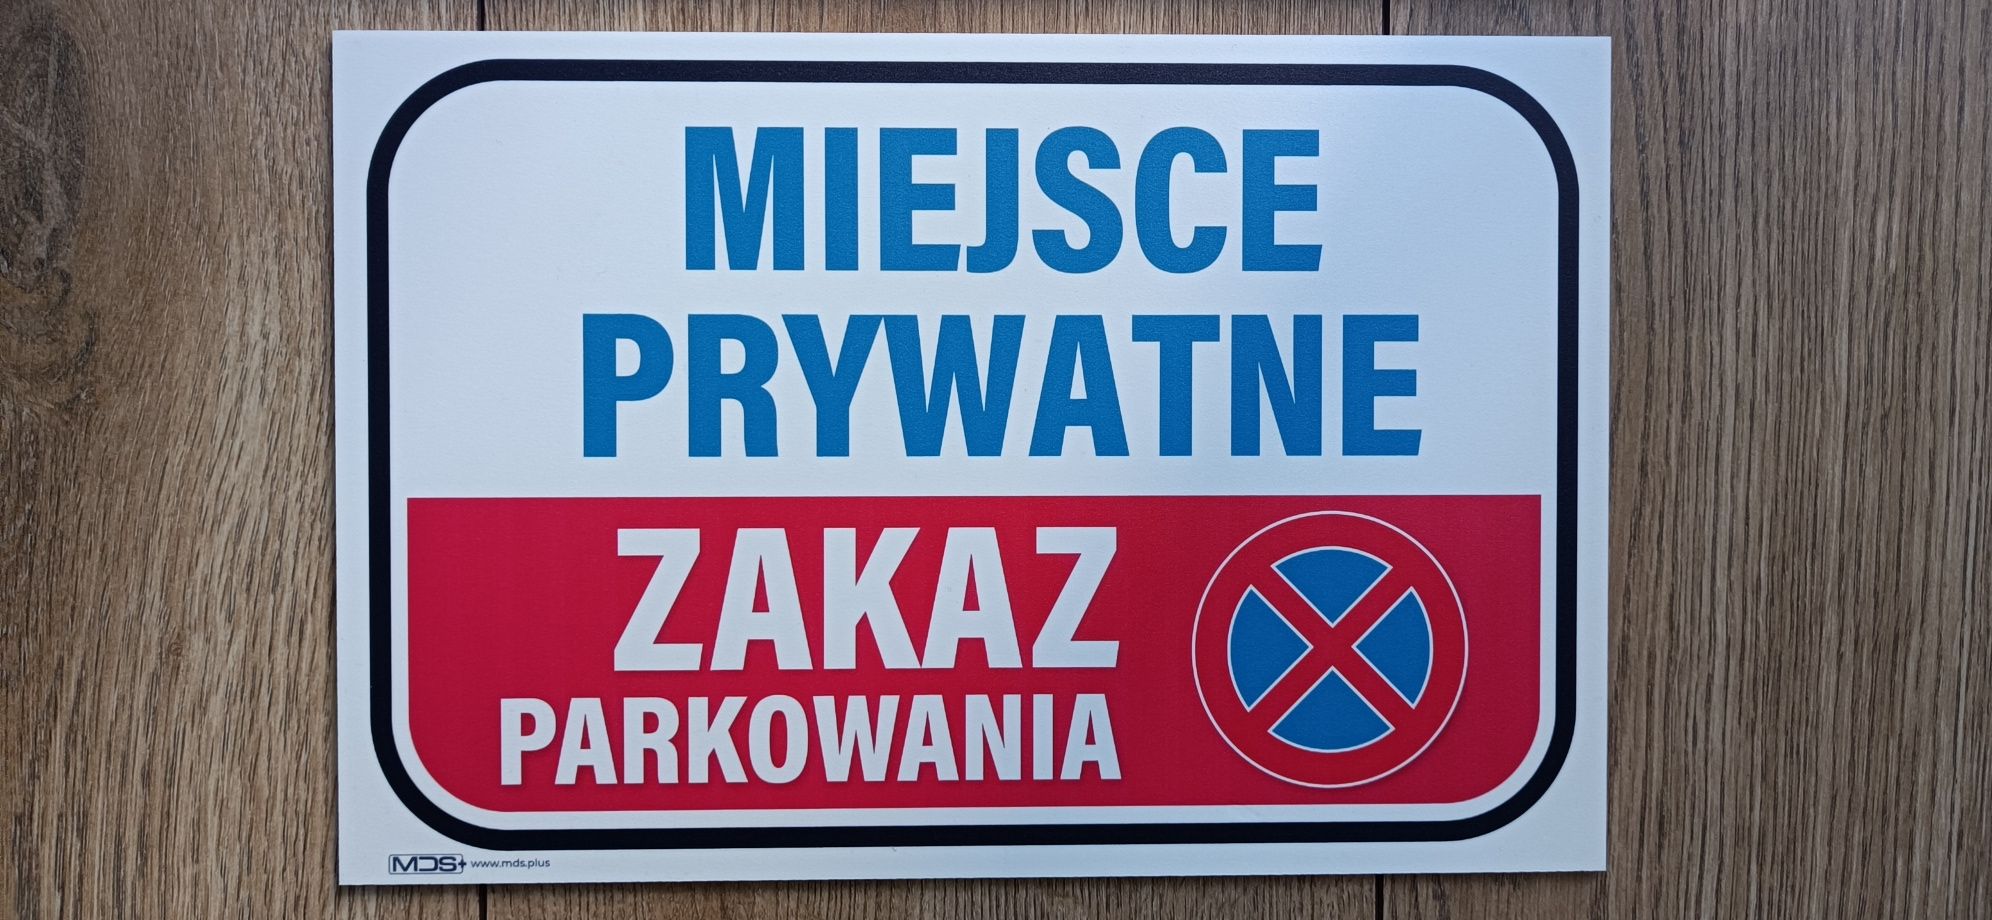 Tabliczka Zakaz parkowania Miejsce prywatne znak tablica